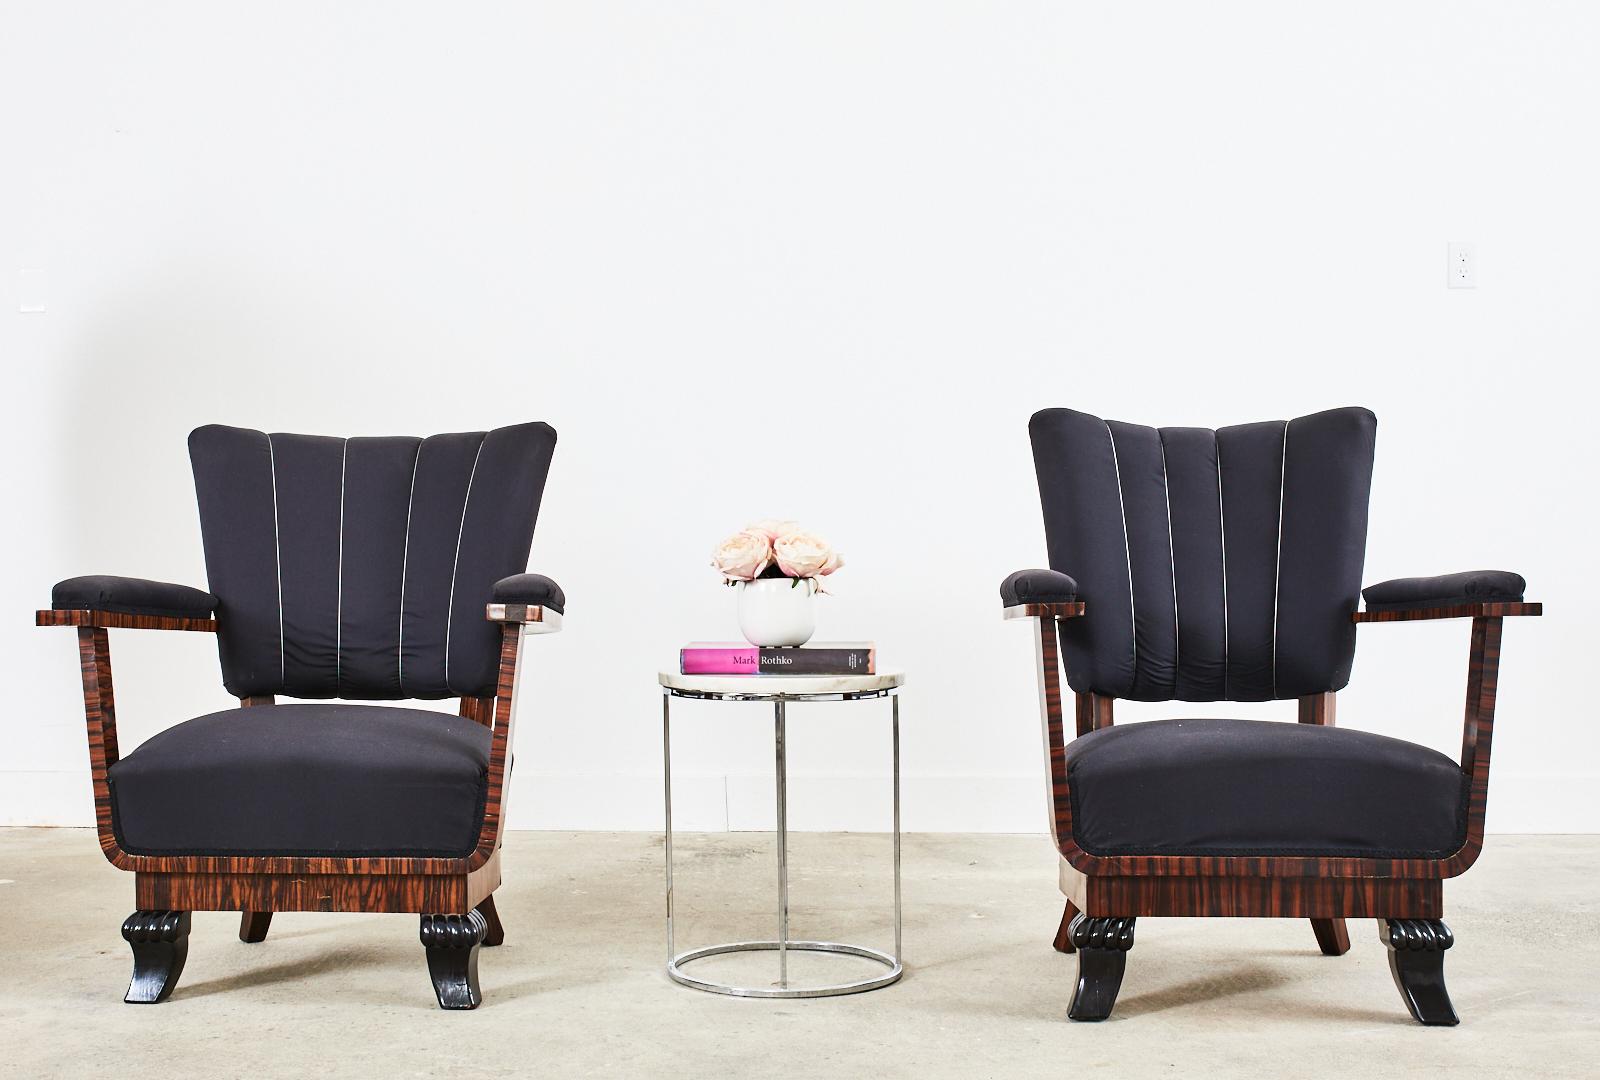 Fantastique paire de fauteuils d'époque Art Déco français présentant un design architectural ouvert unique avec des supports d'avant-bras en forme de 